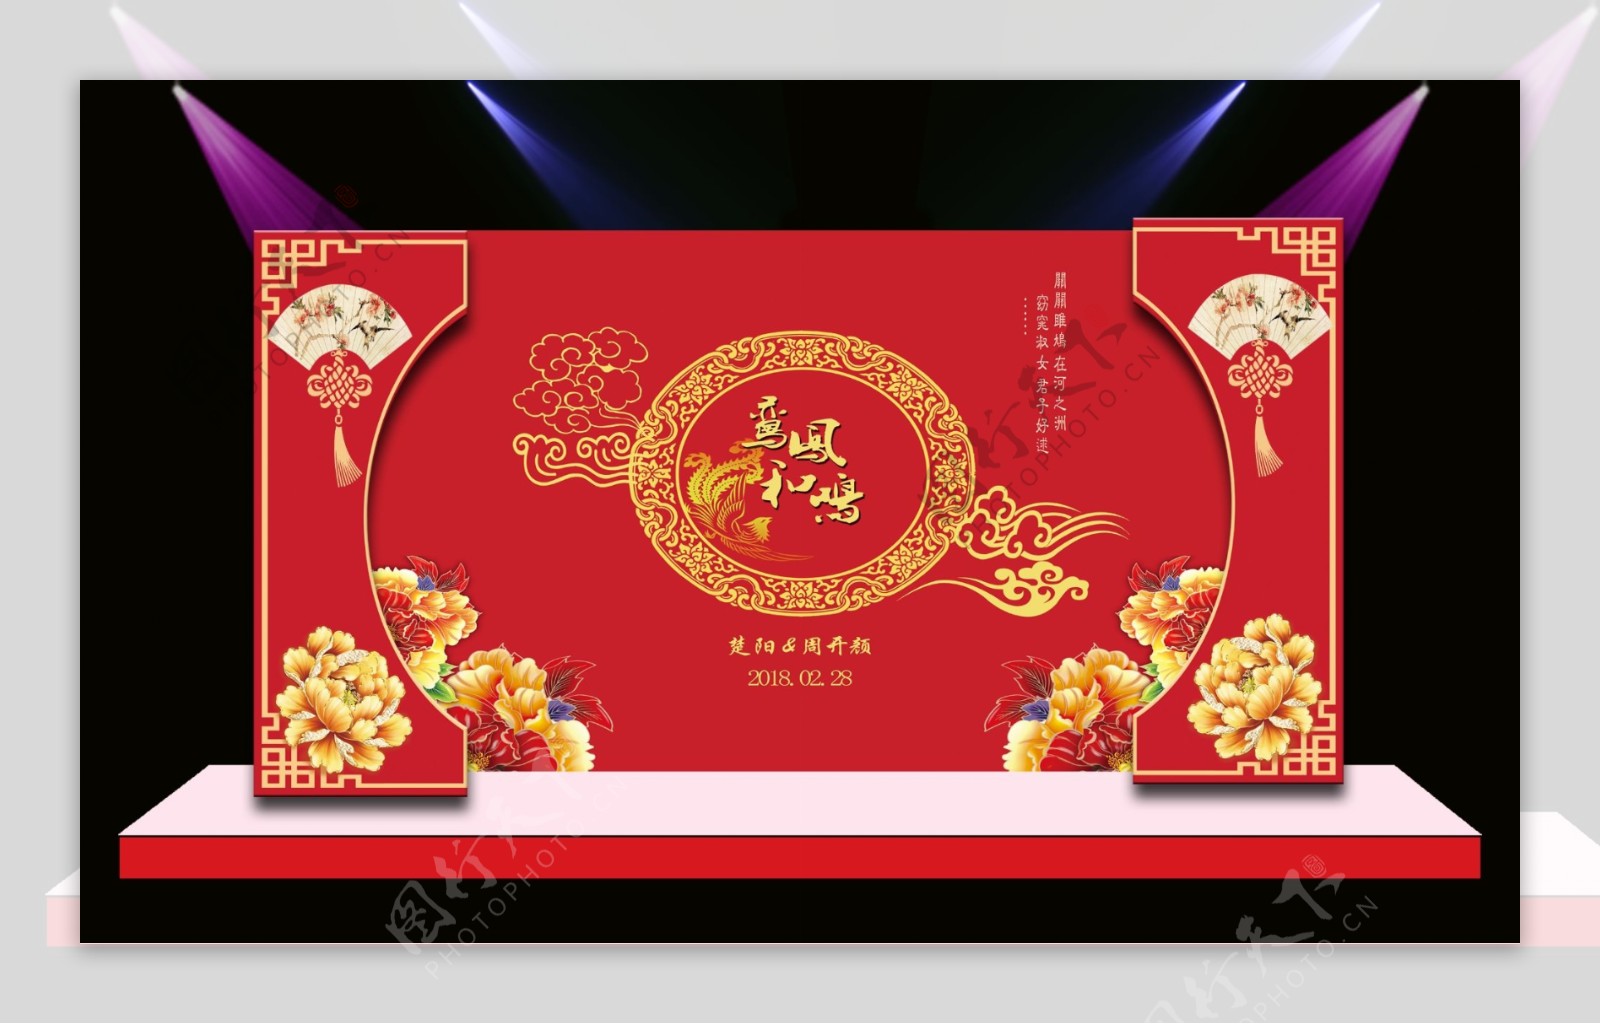 中式婚礼效果图设计模板